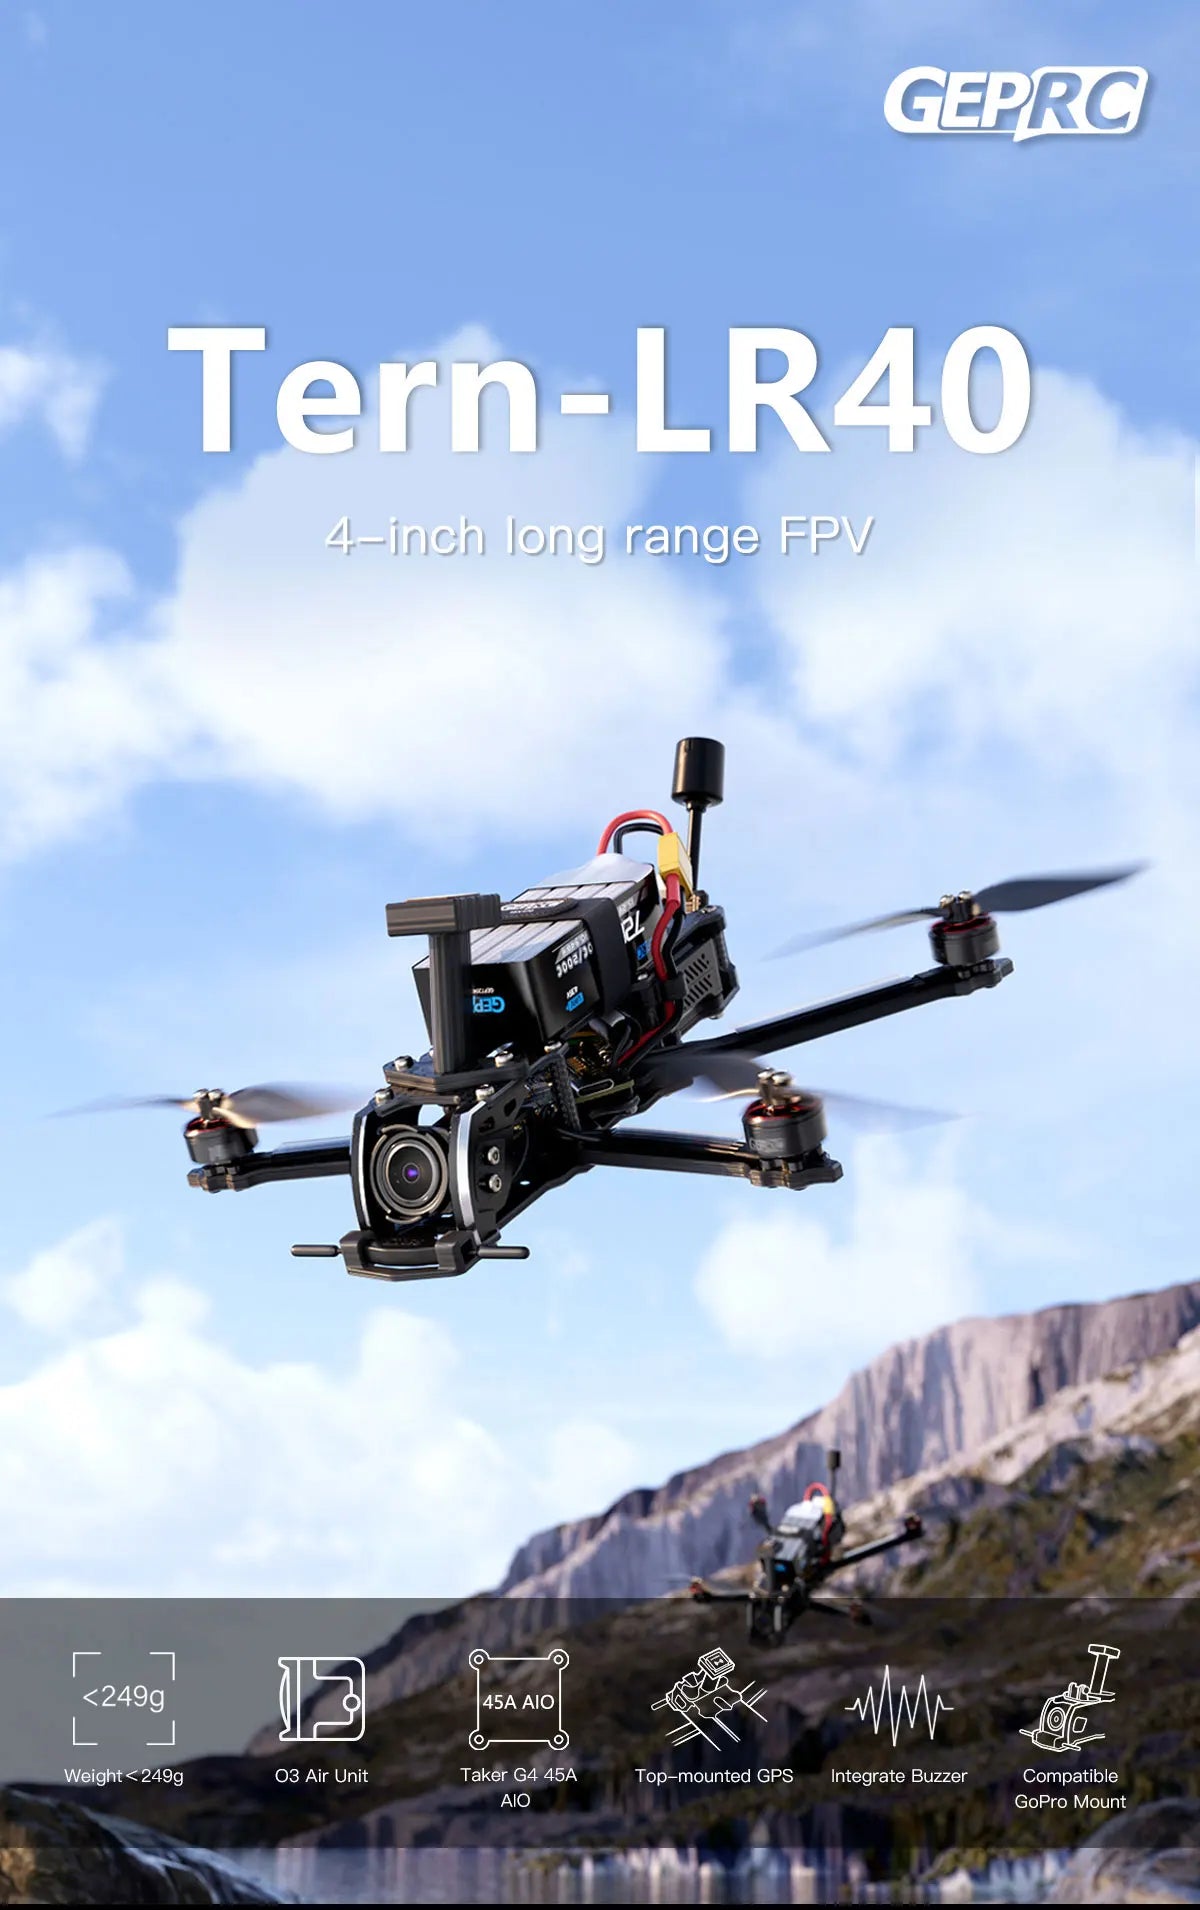 GEPRC Tern-LR40 HD Wasp Long Range FPV, GEPRC Tern-LR4O 4-inchi range FPV 835 45